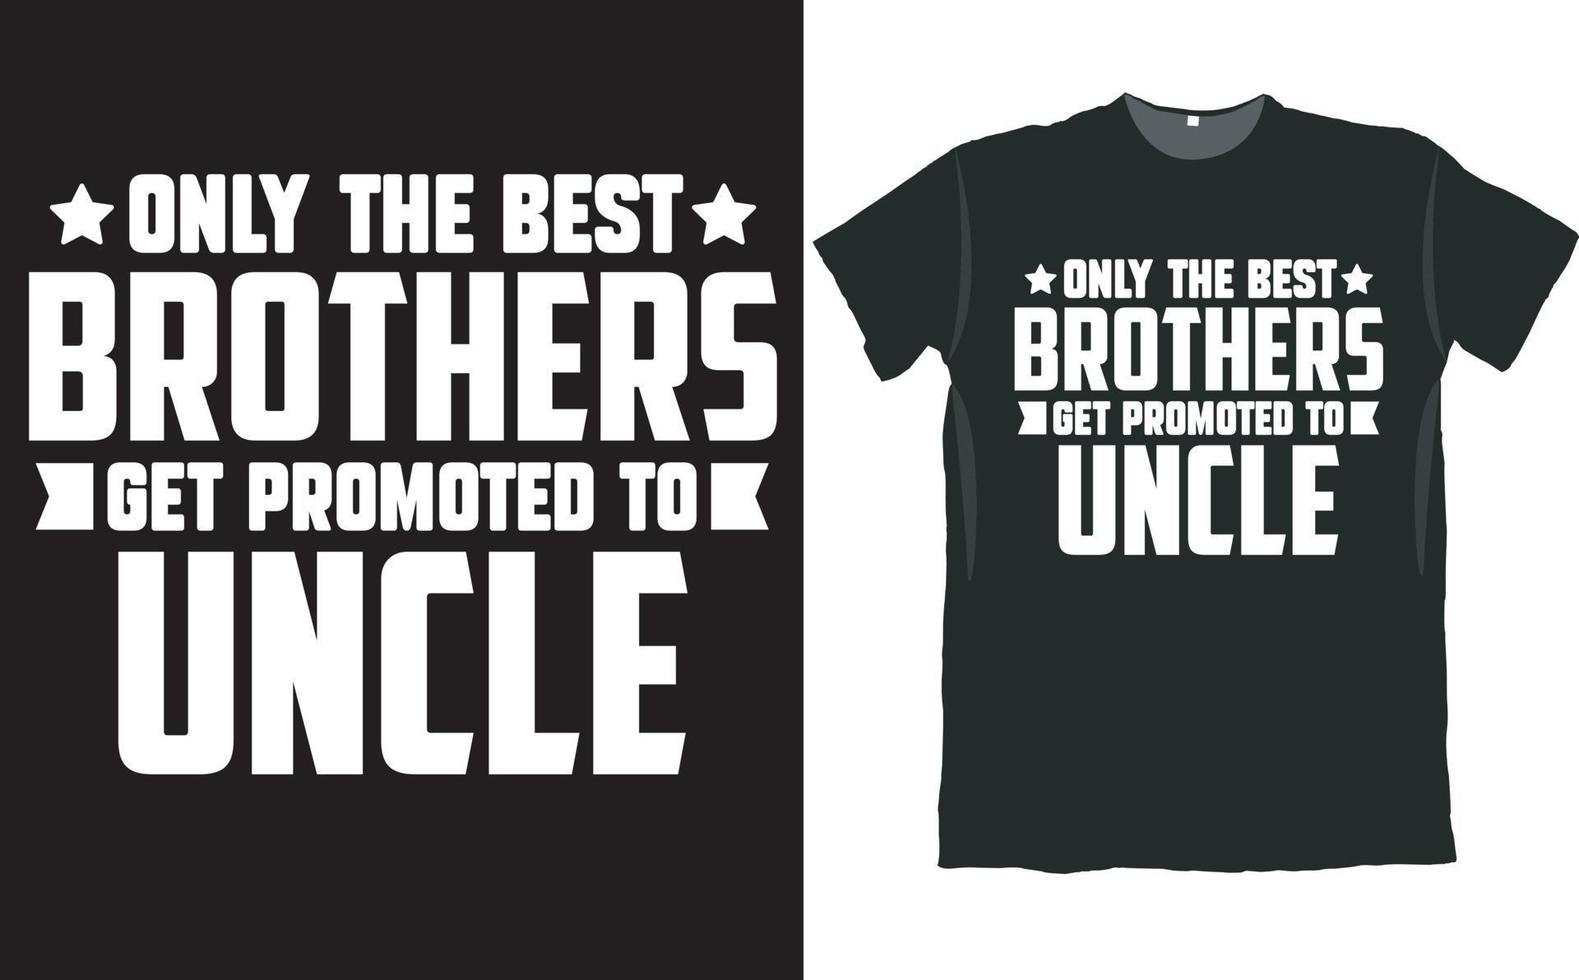 solo i migliori fratelli vengono promossi al design della maglietta dello zio vettore